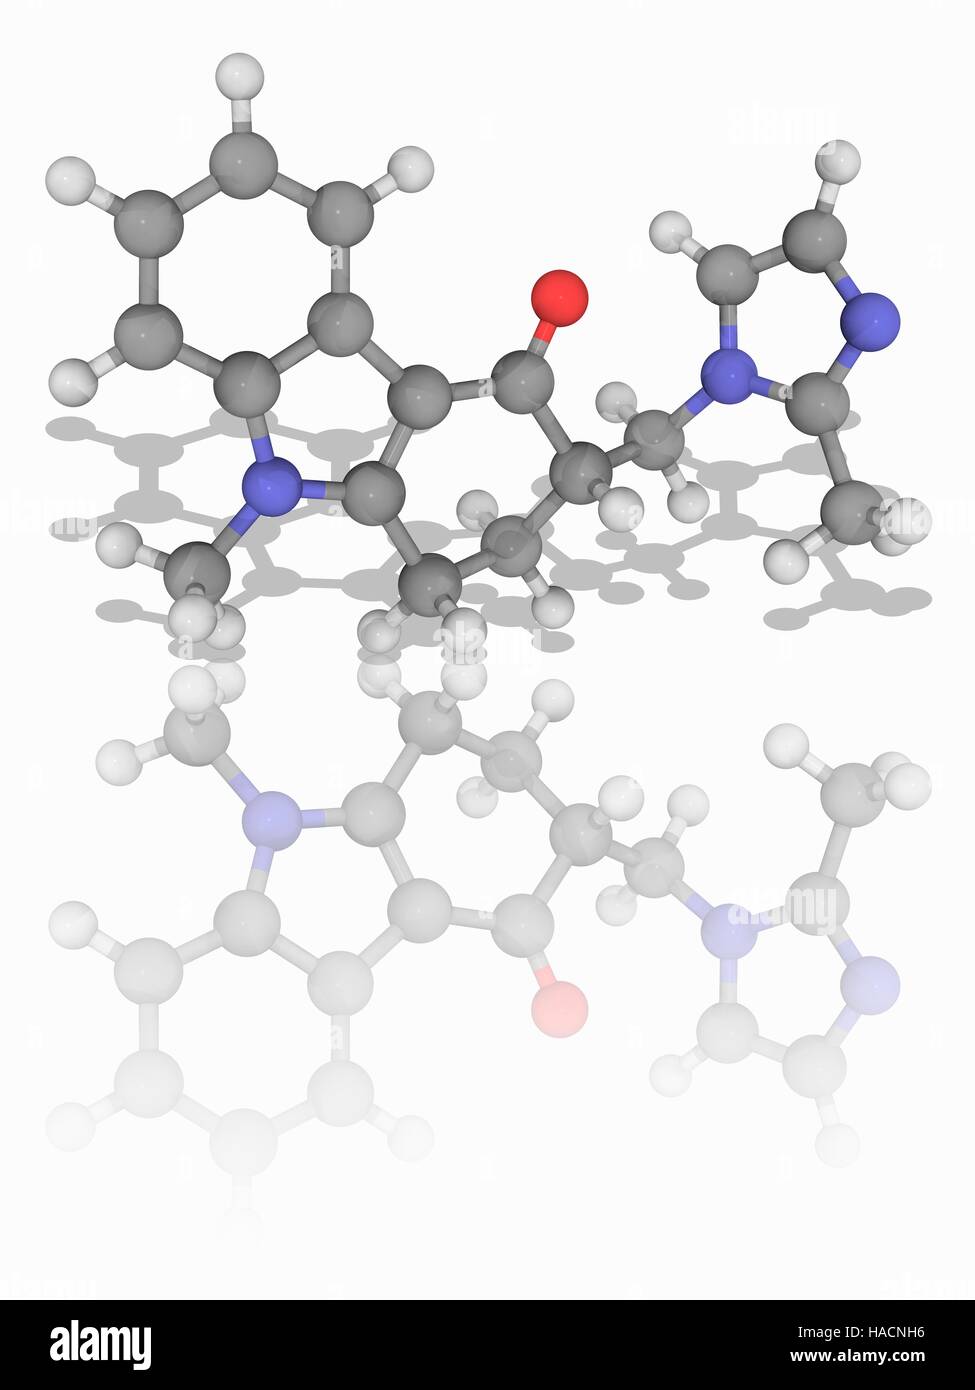 Ondansetron. Molekulares Modell des Medikament Ondansetron (C18. H19. N3. (O), ein Serotonin 5-HT3-Rezeptor-Antagonisten (Setron) verwendet in der Behandlung von Übelkeit und Erbrechen nach Chemotherapie. Atome als Kugeln dargestellt werden und sind farblich gekennzeichnet: Kohlenstoff (grau), Wasserstoff (weiß), Stickstoff (blau) und Sauerstoff (rot). Abbildung. Stockfoto